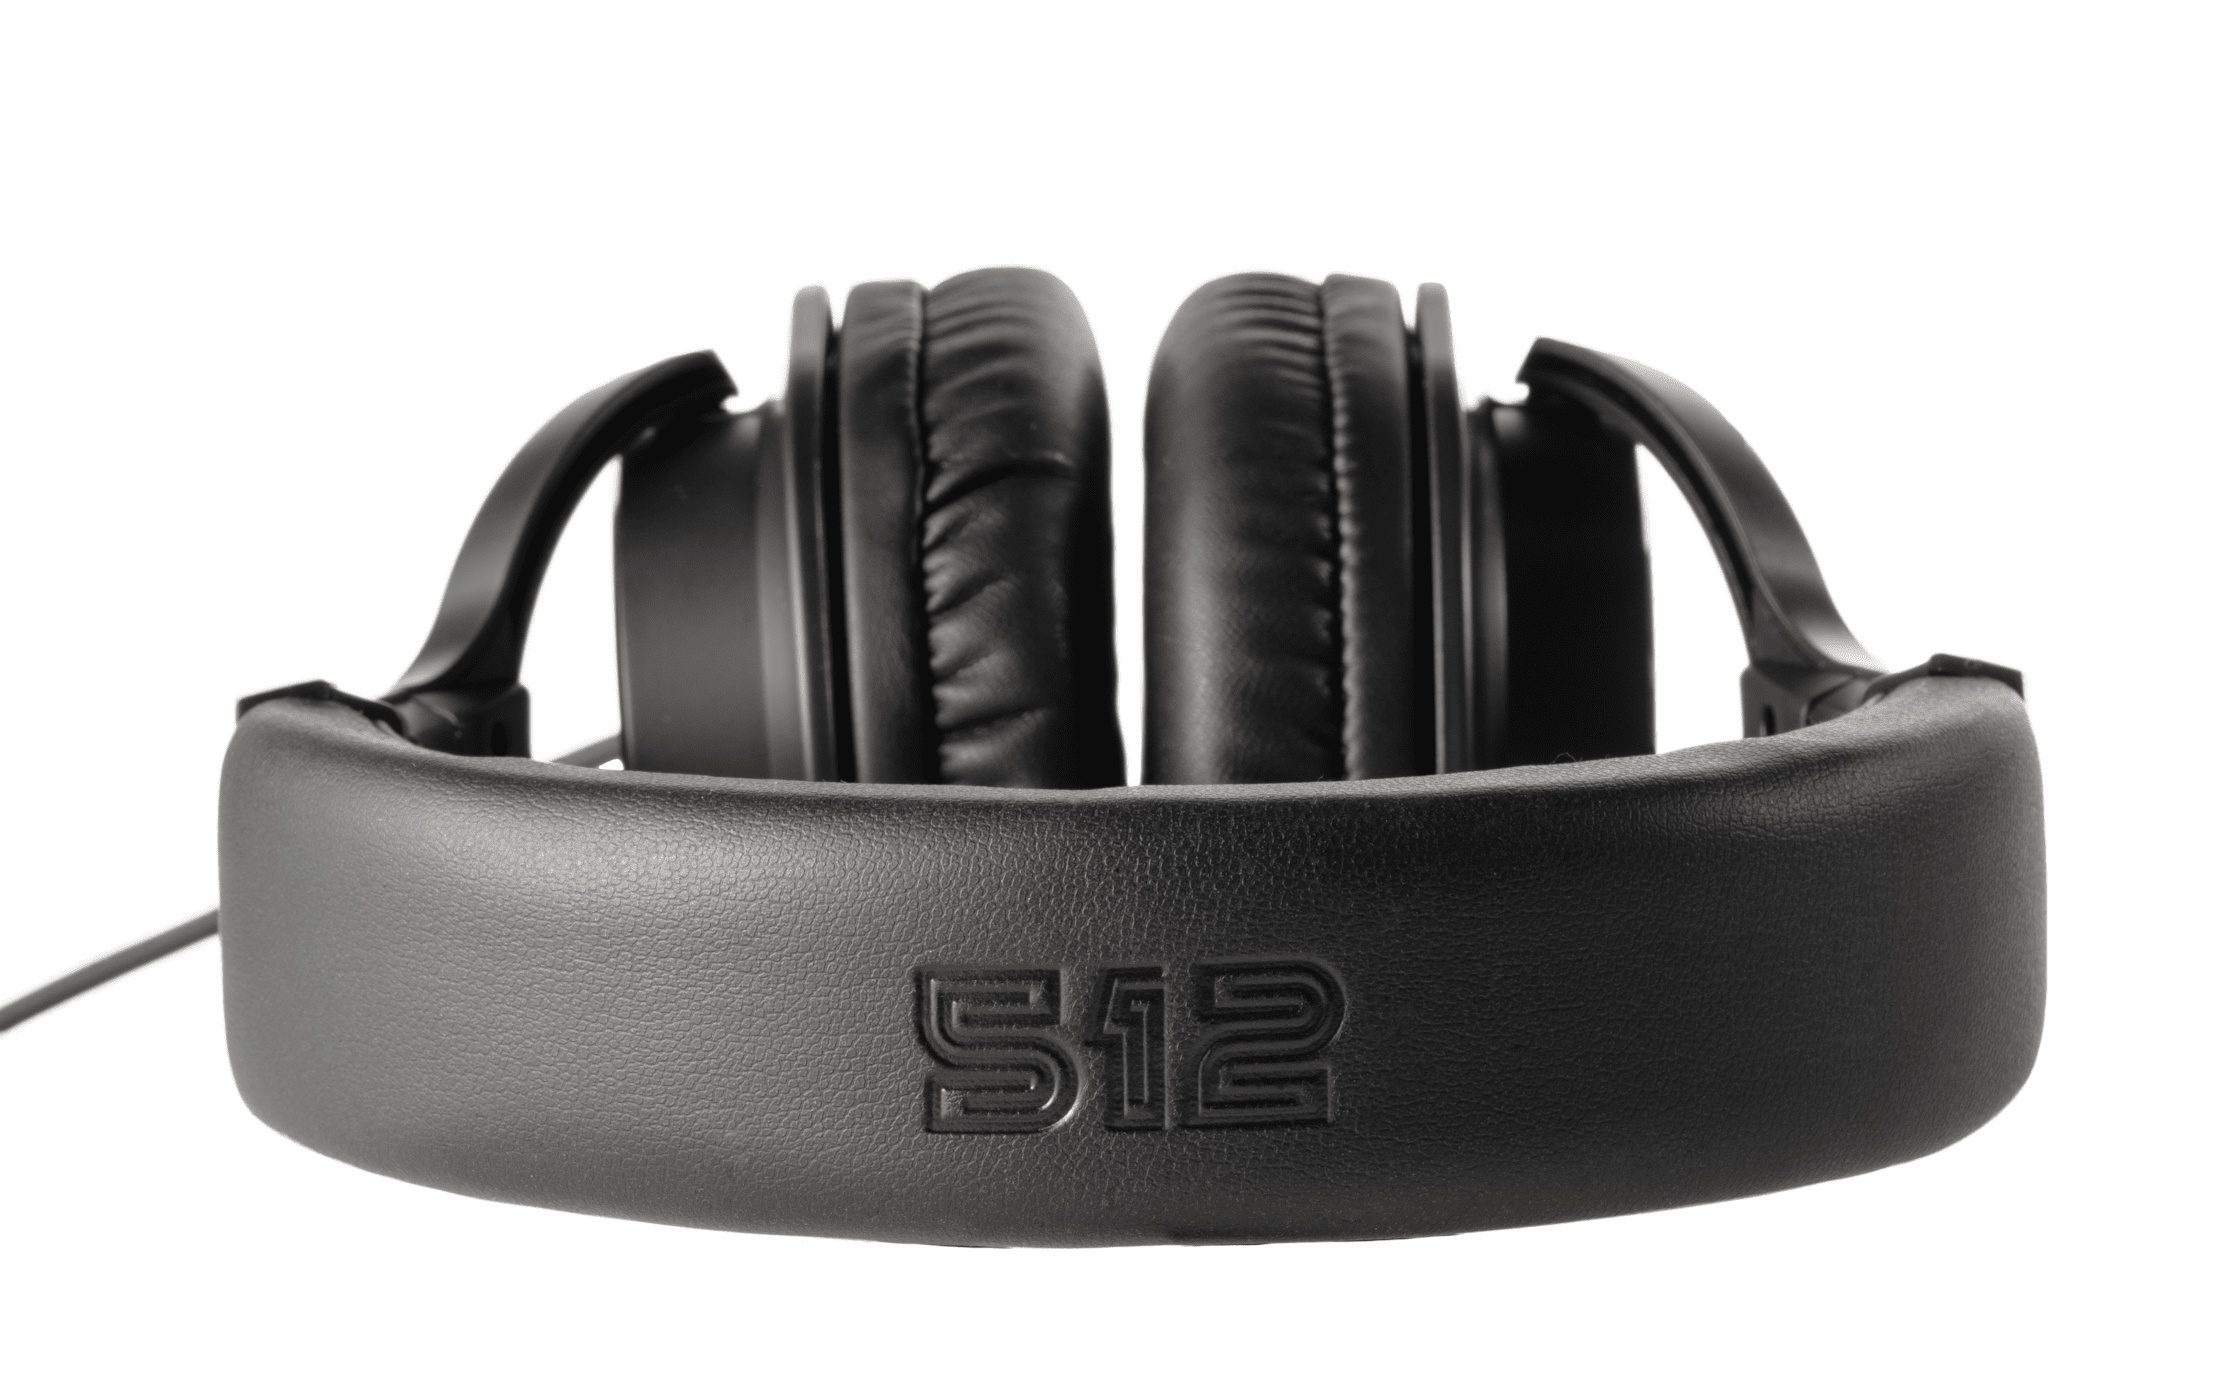 512 Audio Academy headphones